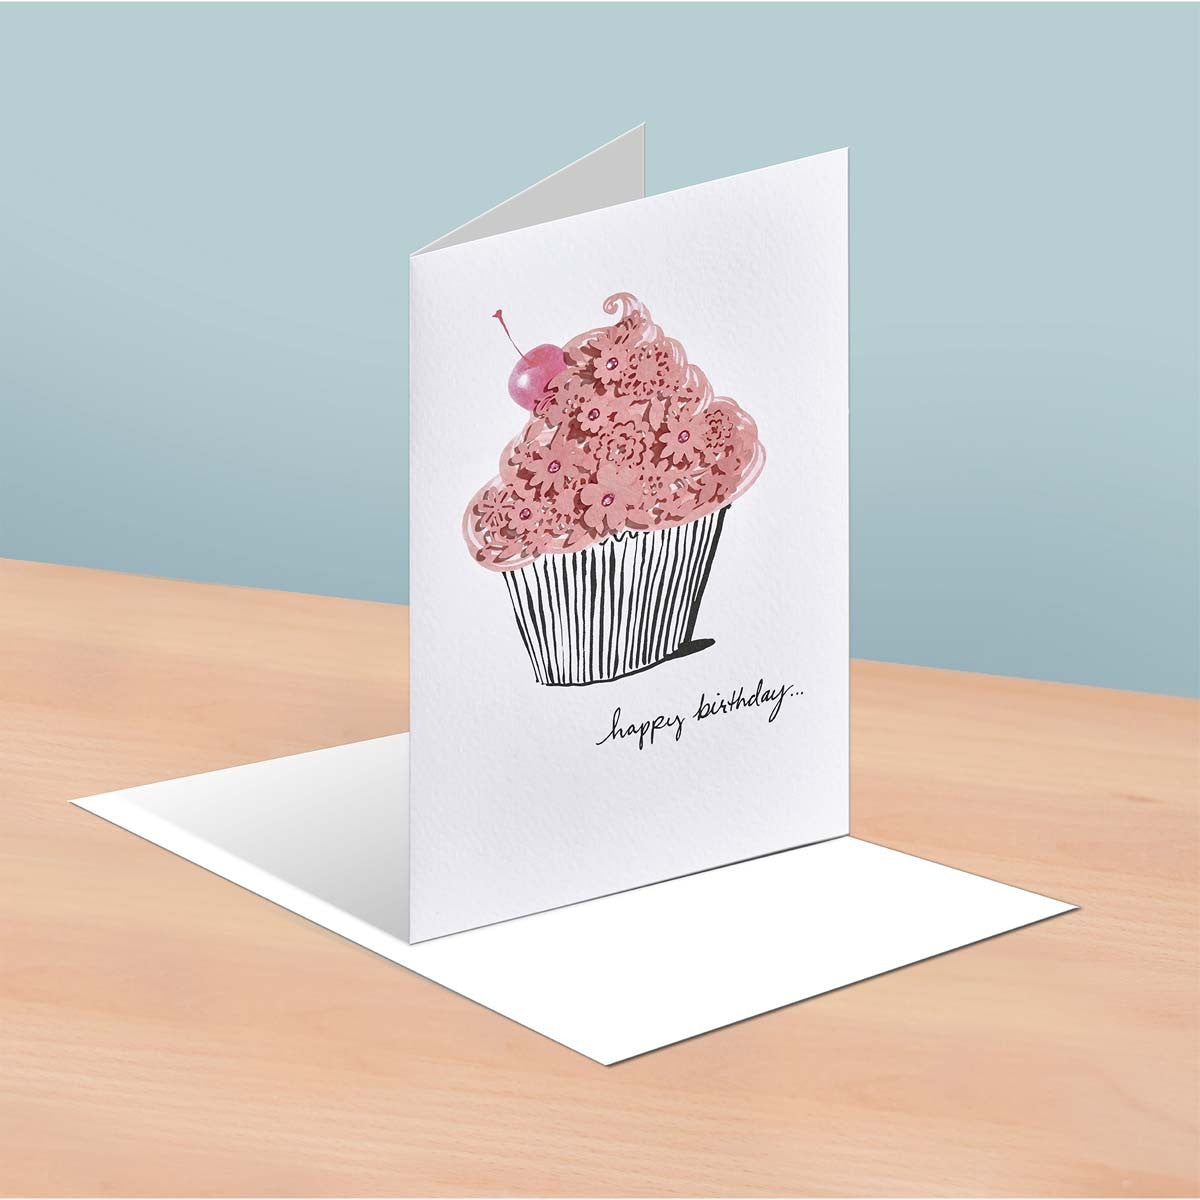 Carte anniversaire Cupcake et délices